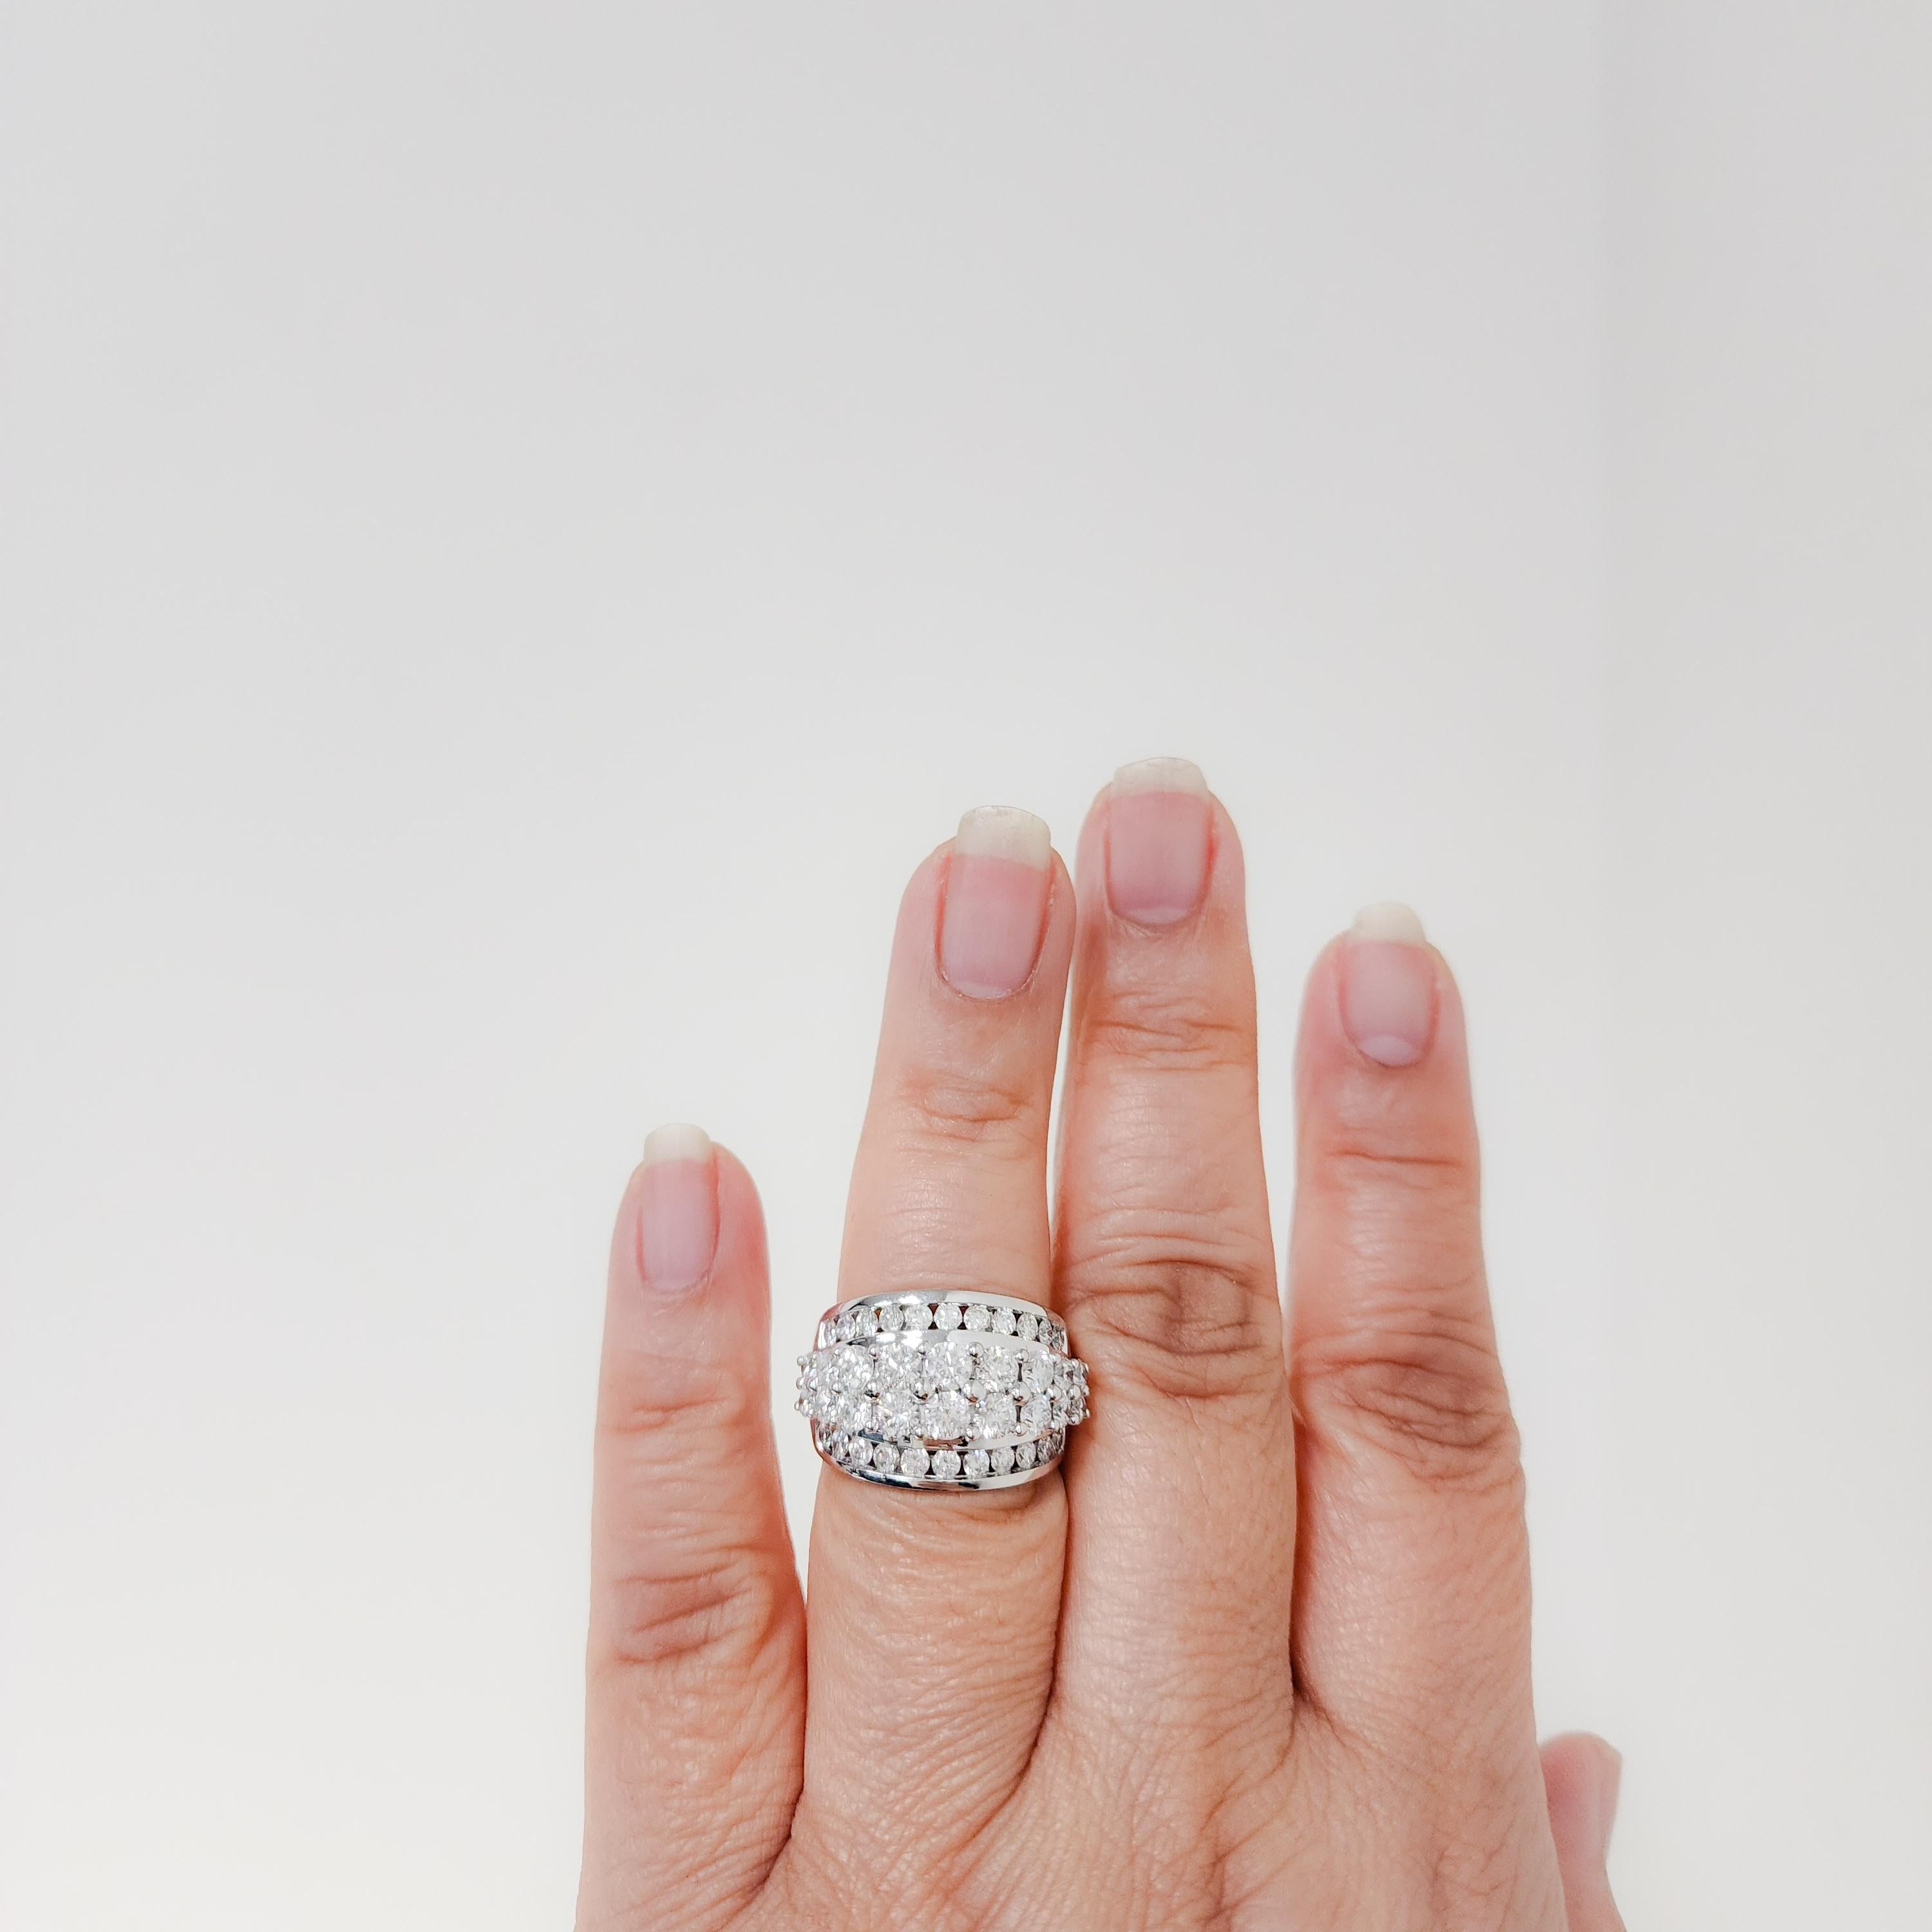 Schöner Ring mit 3.00 ct. weißen runden Diamanten von guter Qualität.  Handgefertigt aus 14k Weißgold.  Ring Größe 7.